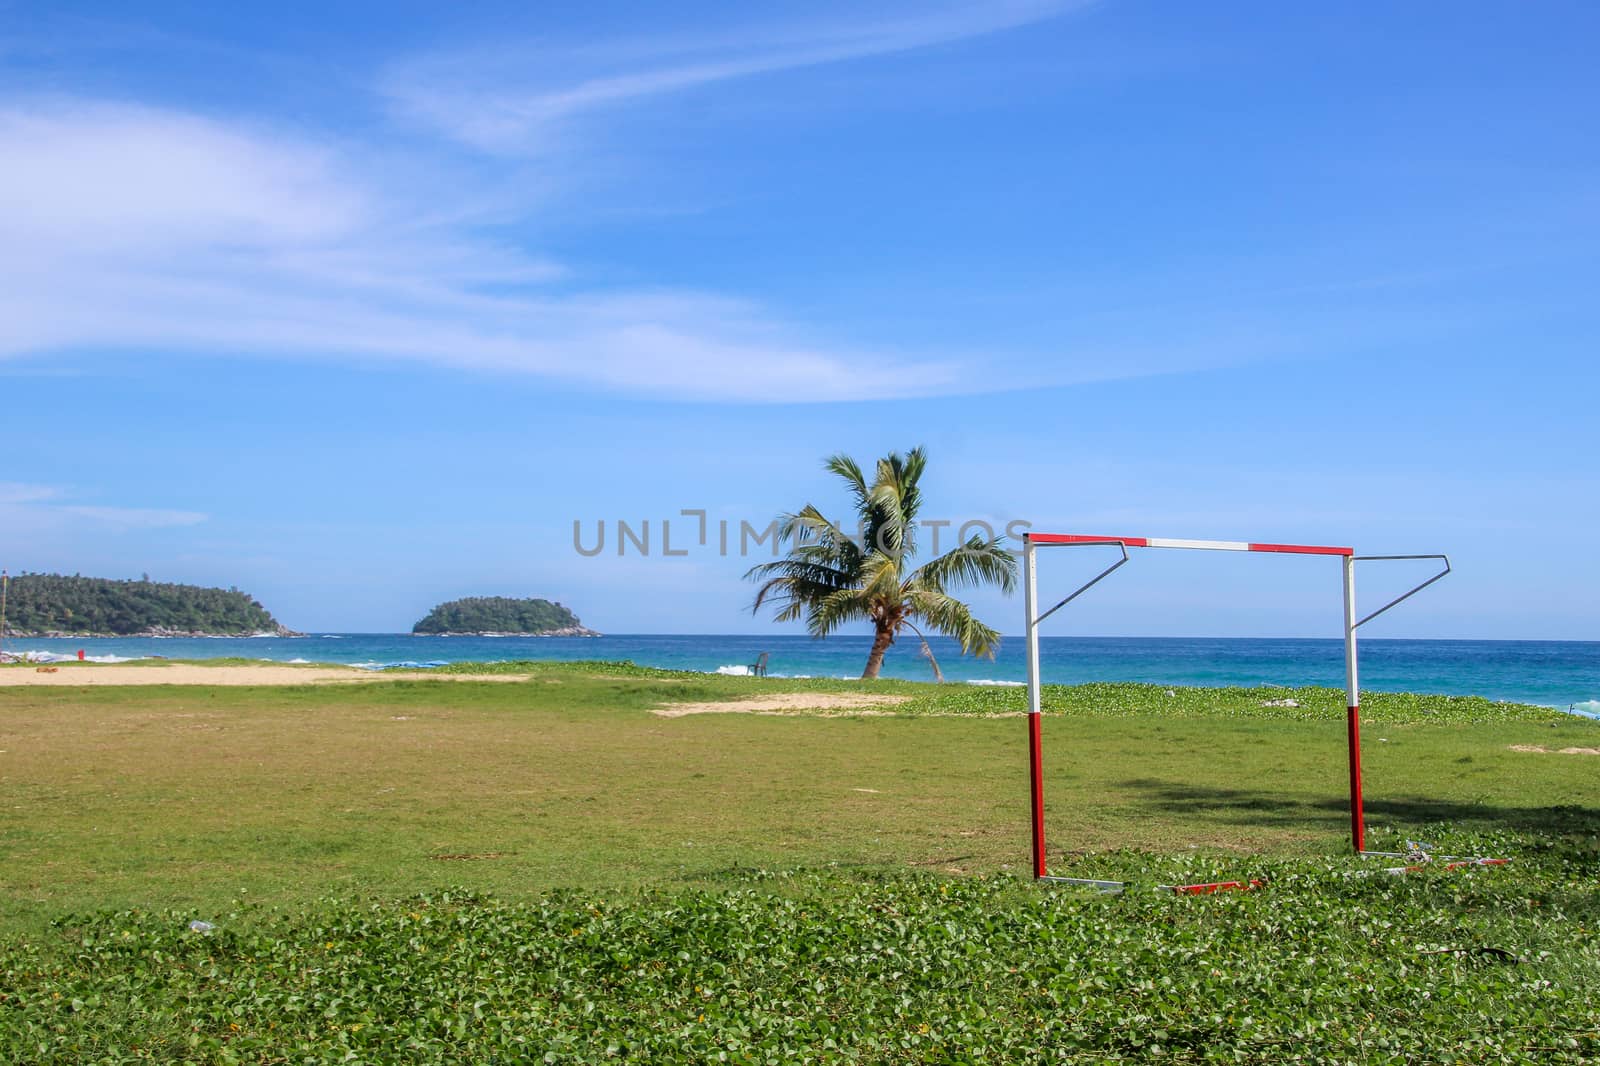 Goal on the beach by danieldep